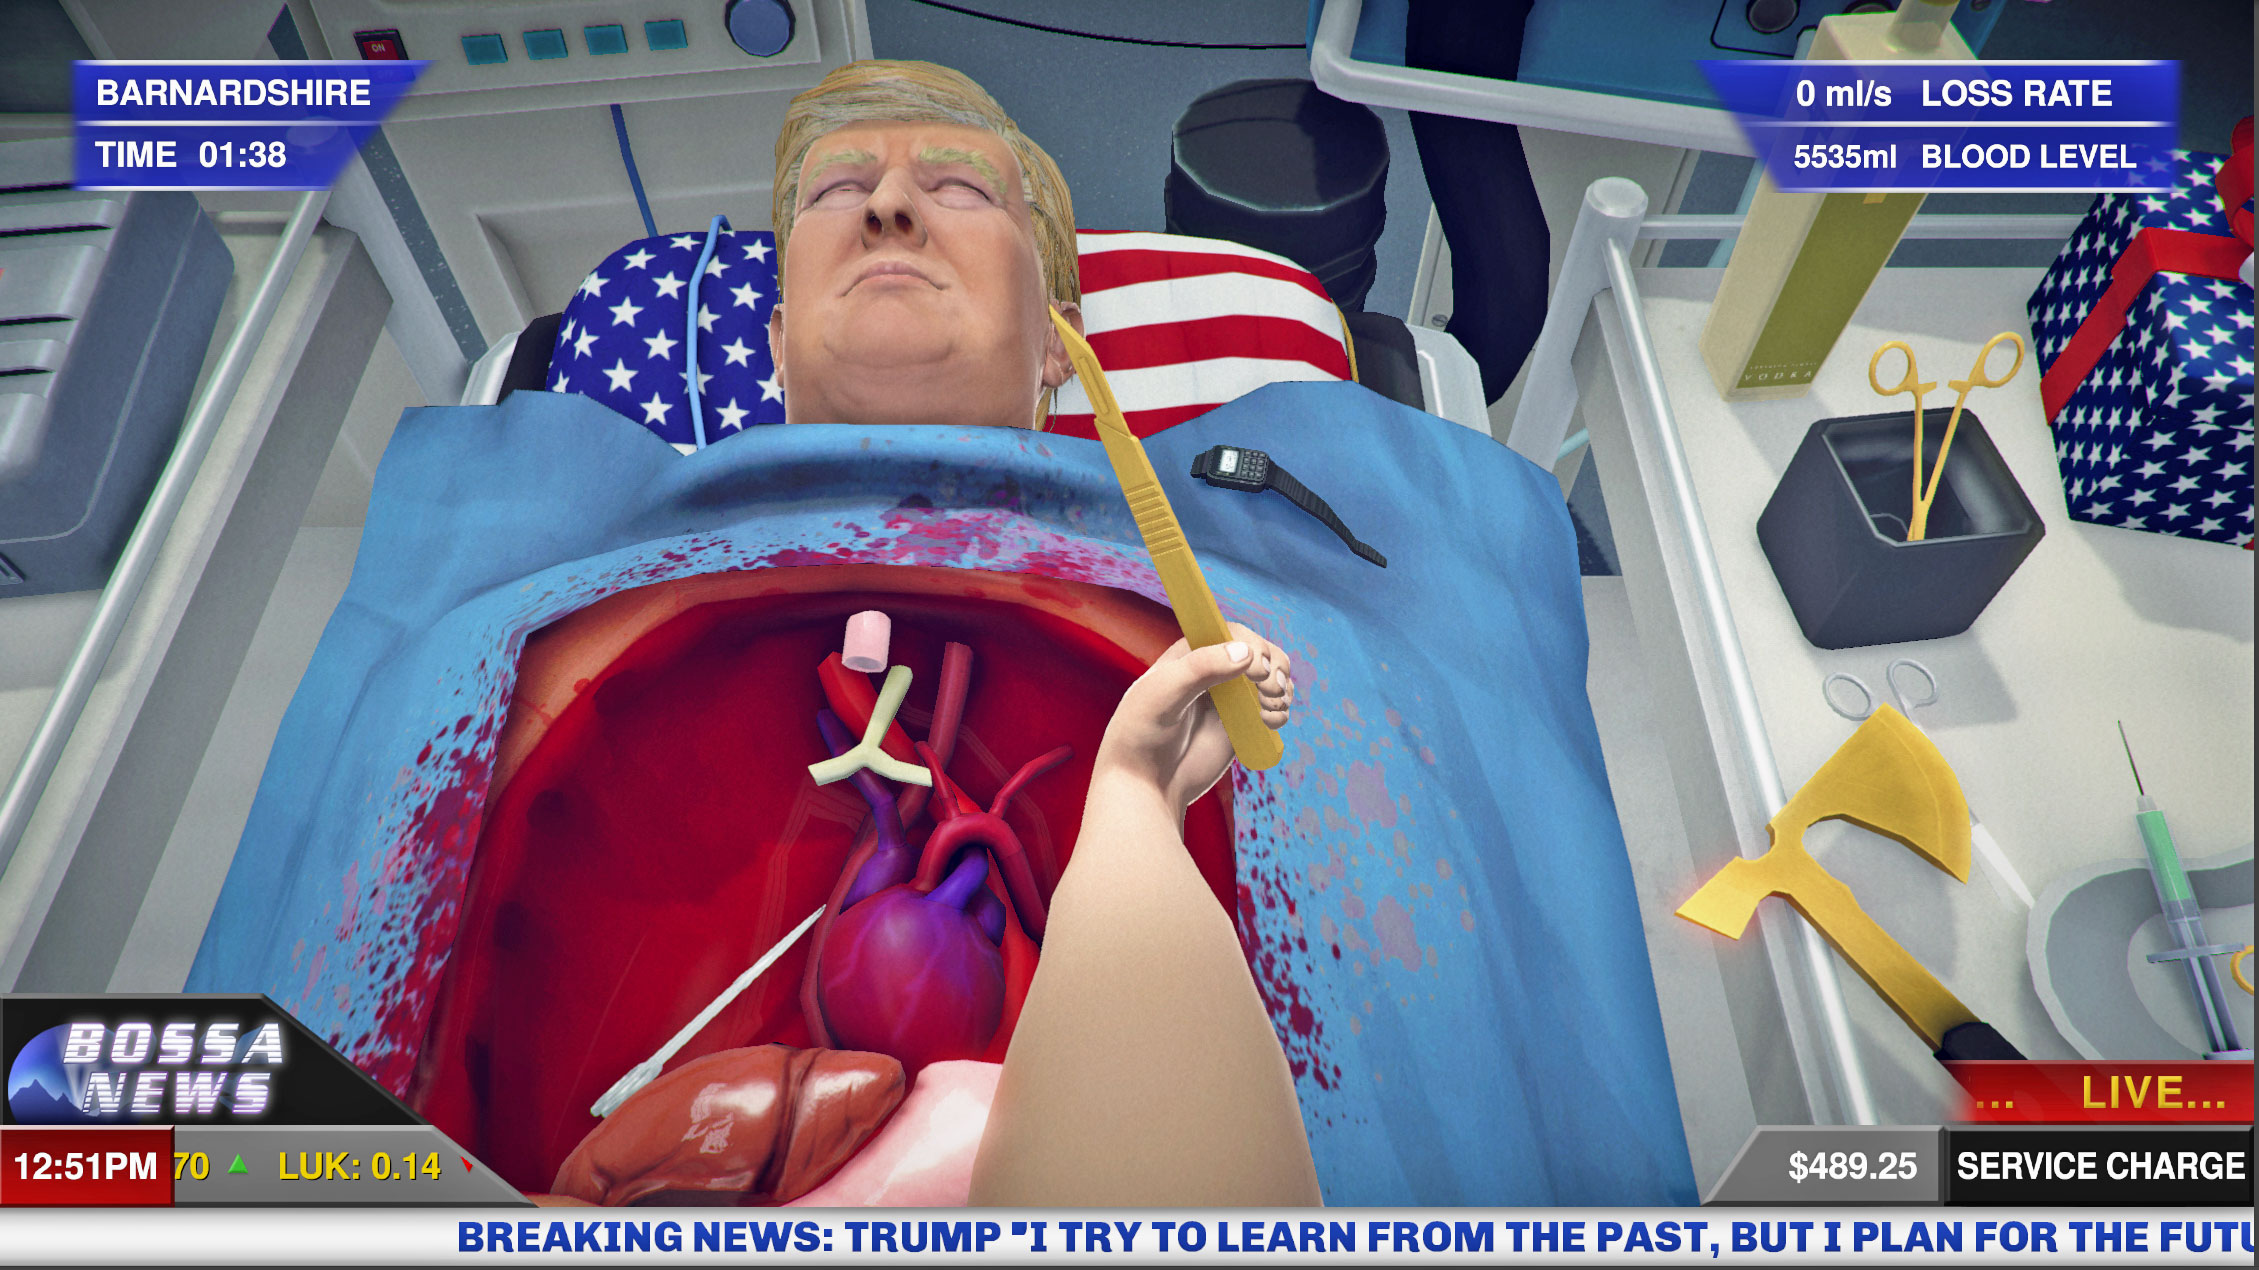 Káº¿t quáº£ hÃ¬nh áº£nh cho Surgeon Simulator - Anniversary Edition: Inside Donald Trump steam